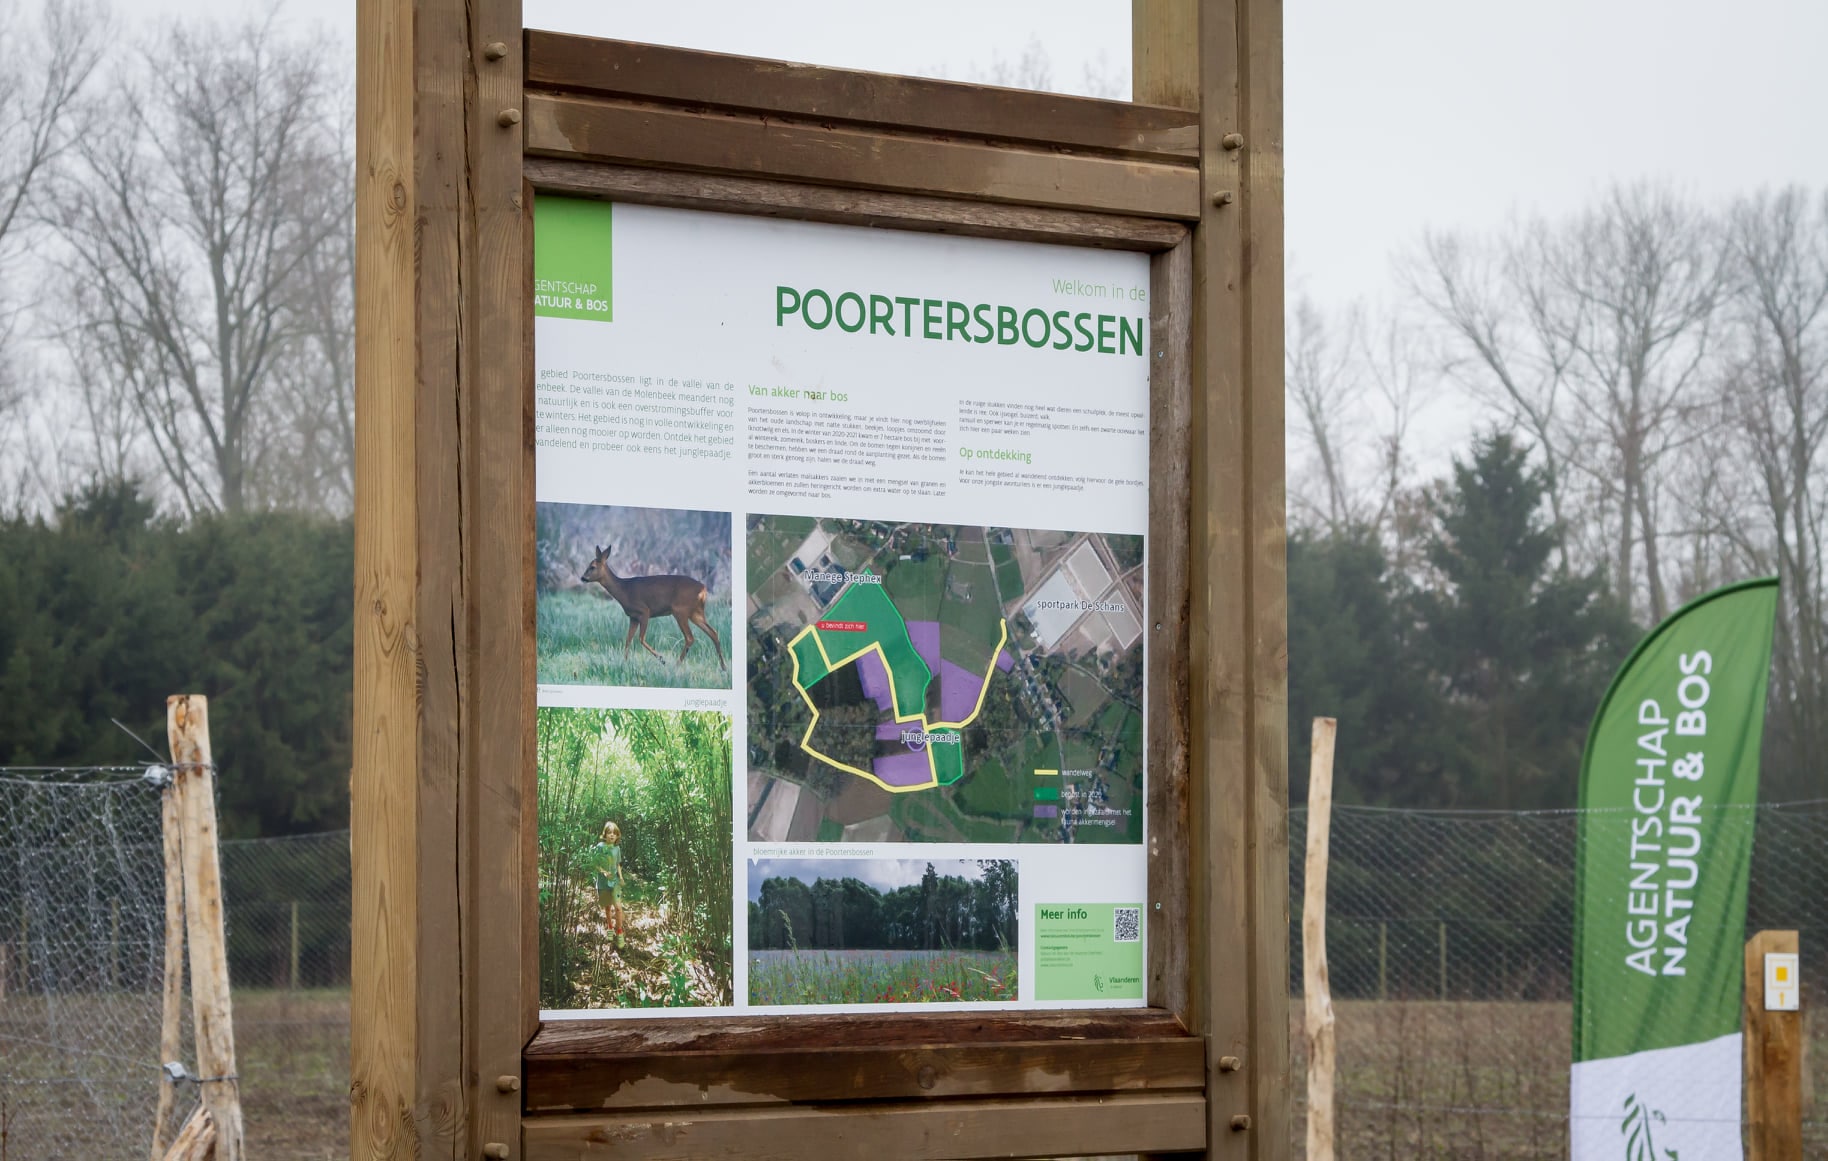 bedrukte dibond platen - infobord aan de Poortersbossen in Puurs-Sint-Amands